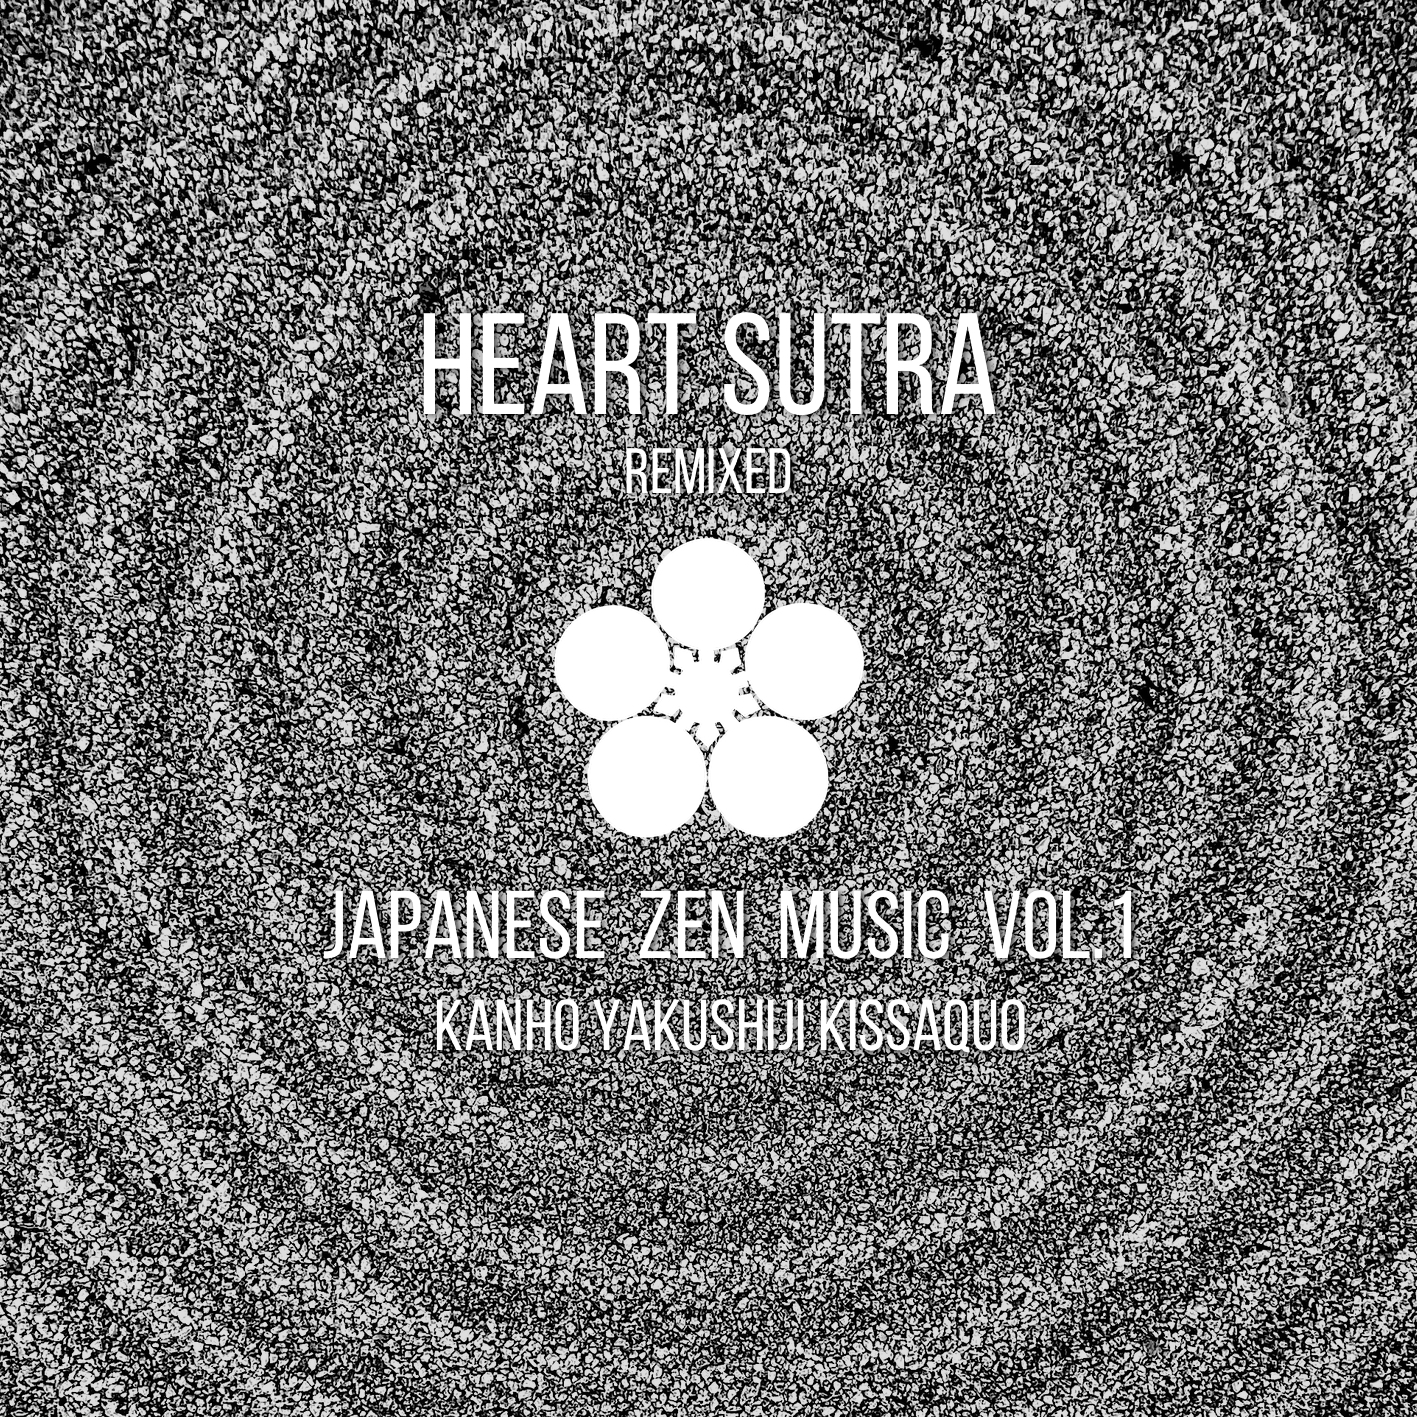 般若心経 (Remixed) -Japanese Zen Music vol.1-
薬師寺寛邦 キッサコ / Kanho Yakushiji Kissaquo